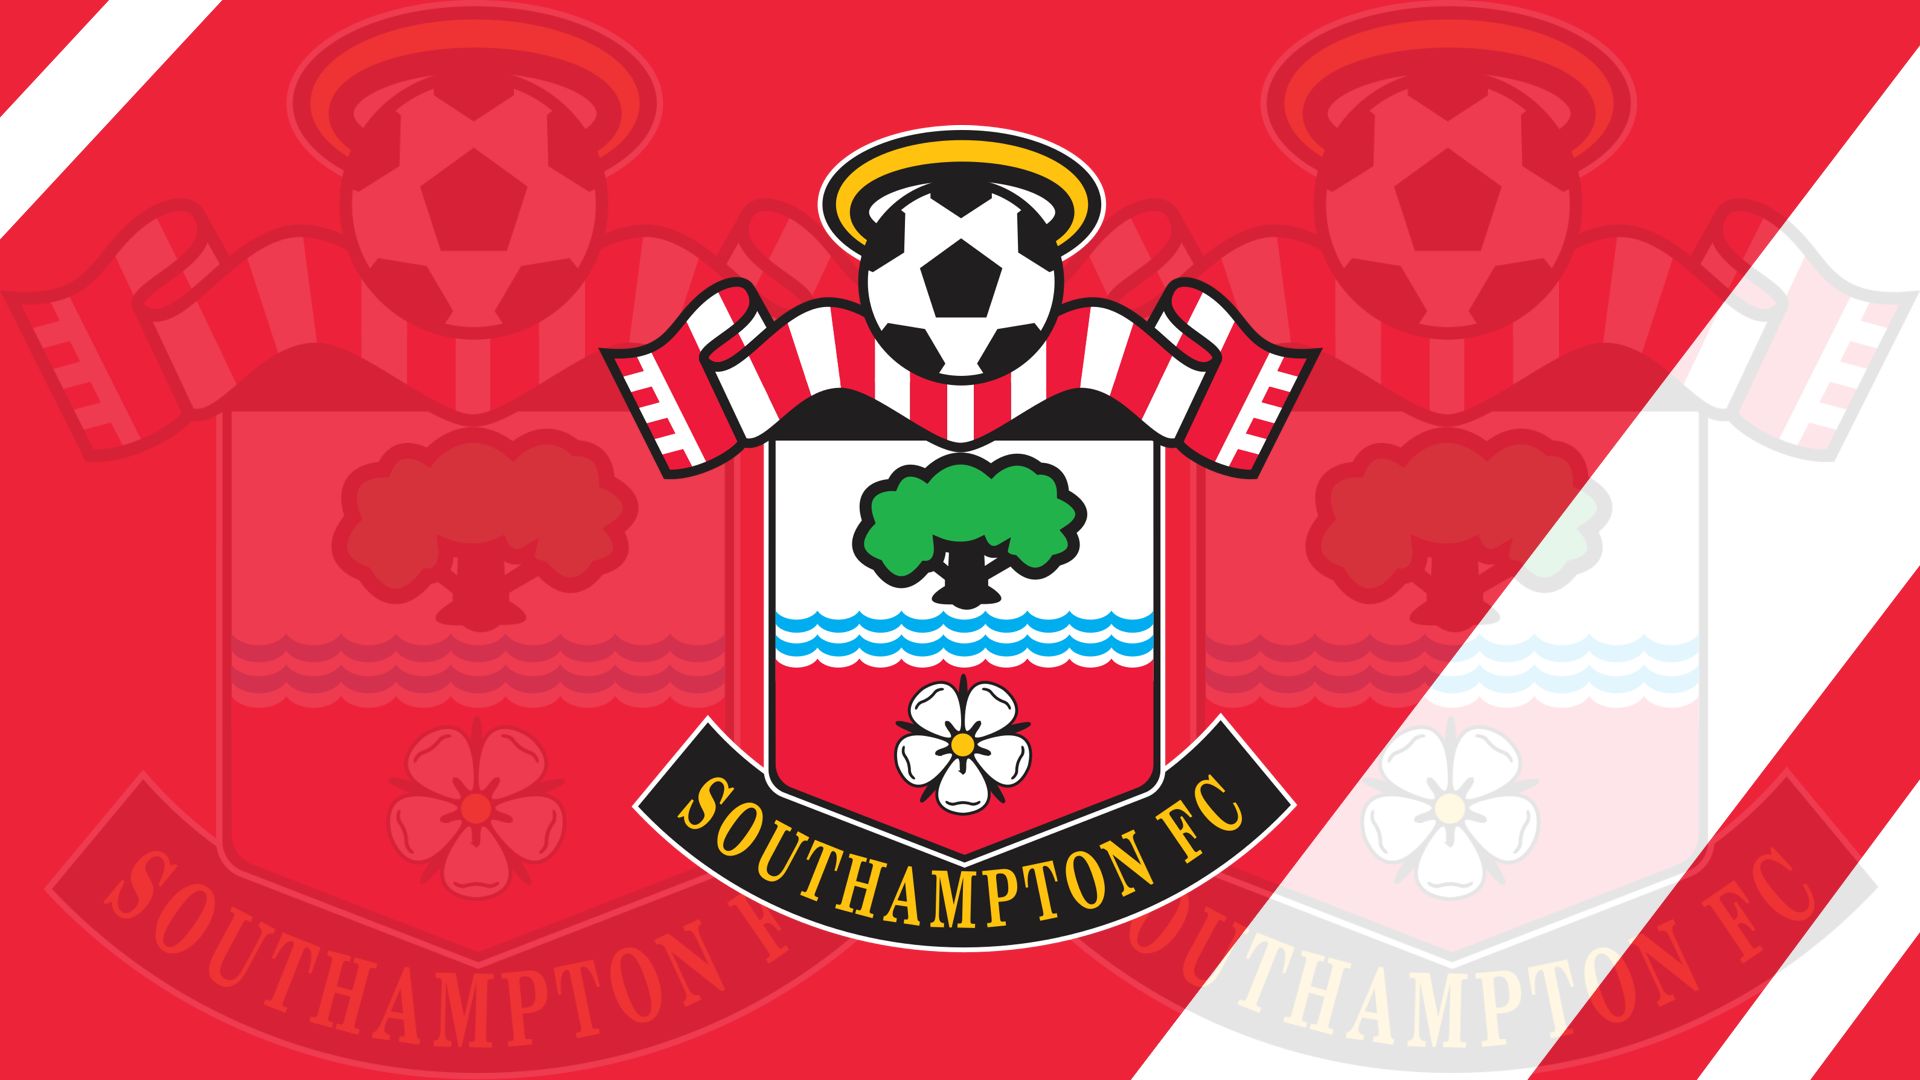 southampton f c, sports, emblem, logo, soccer